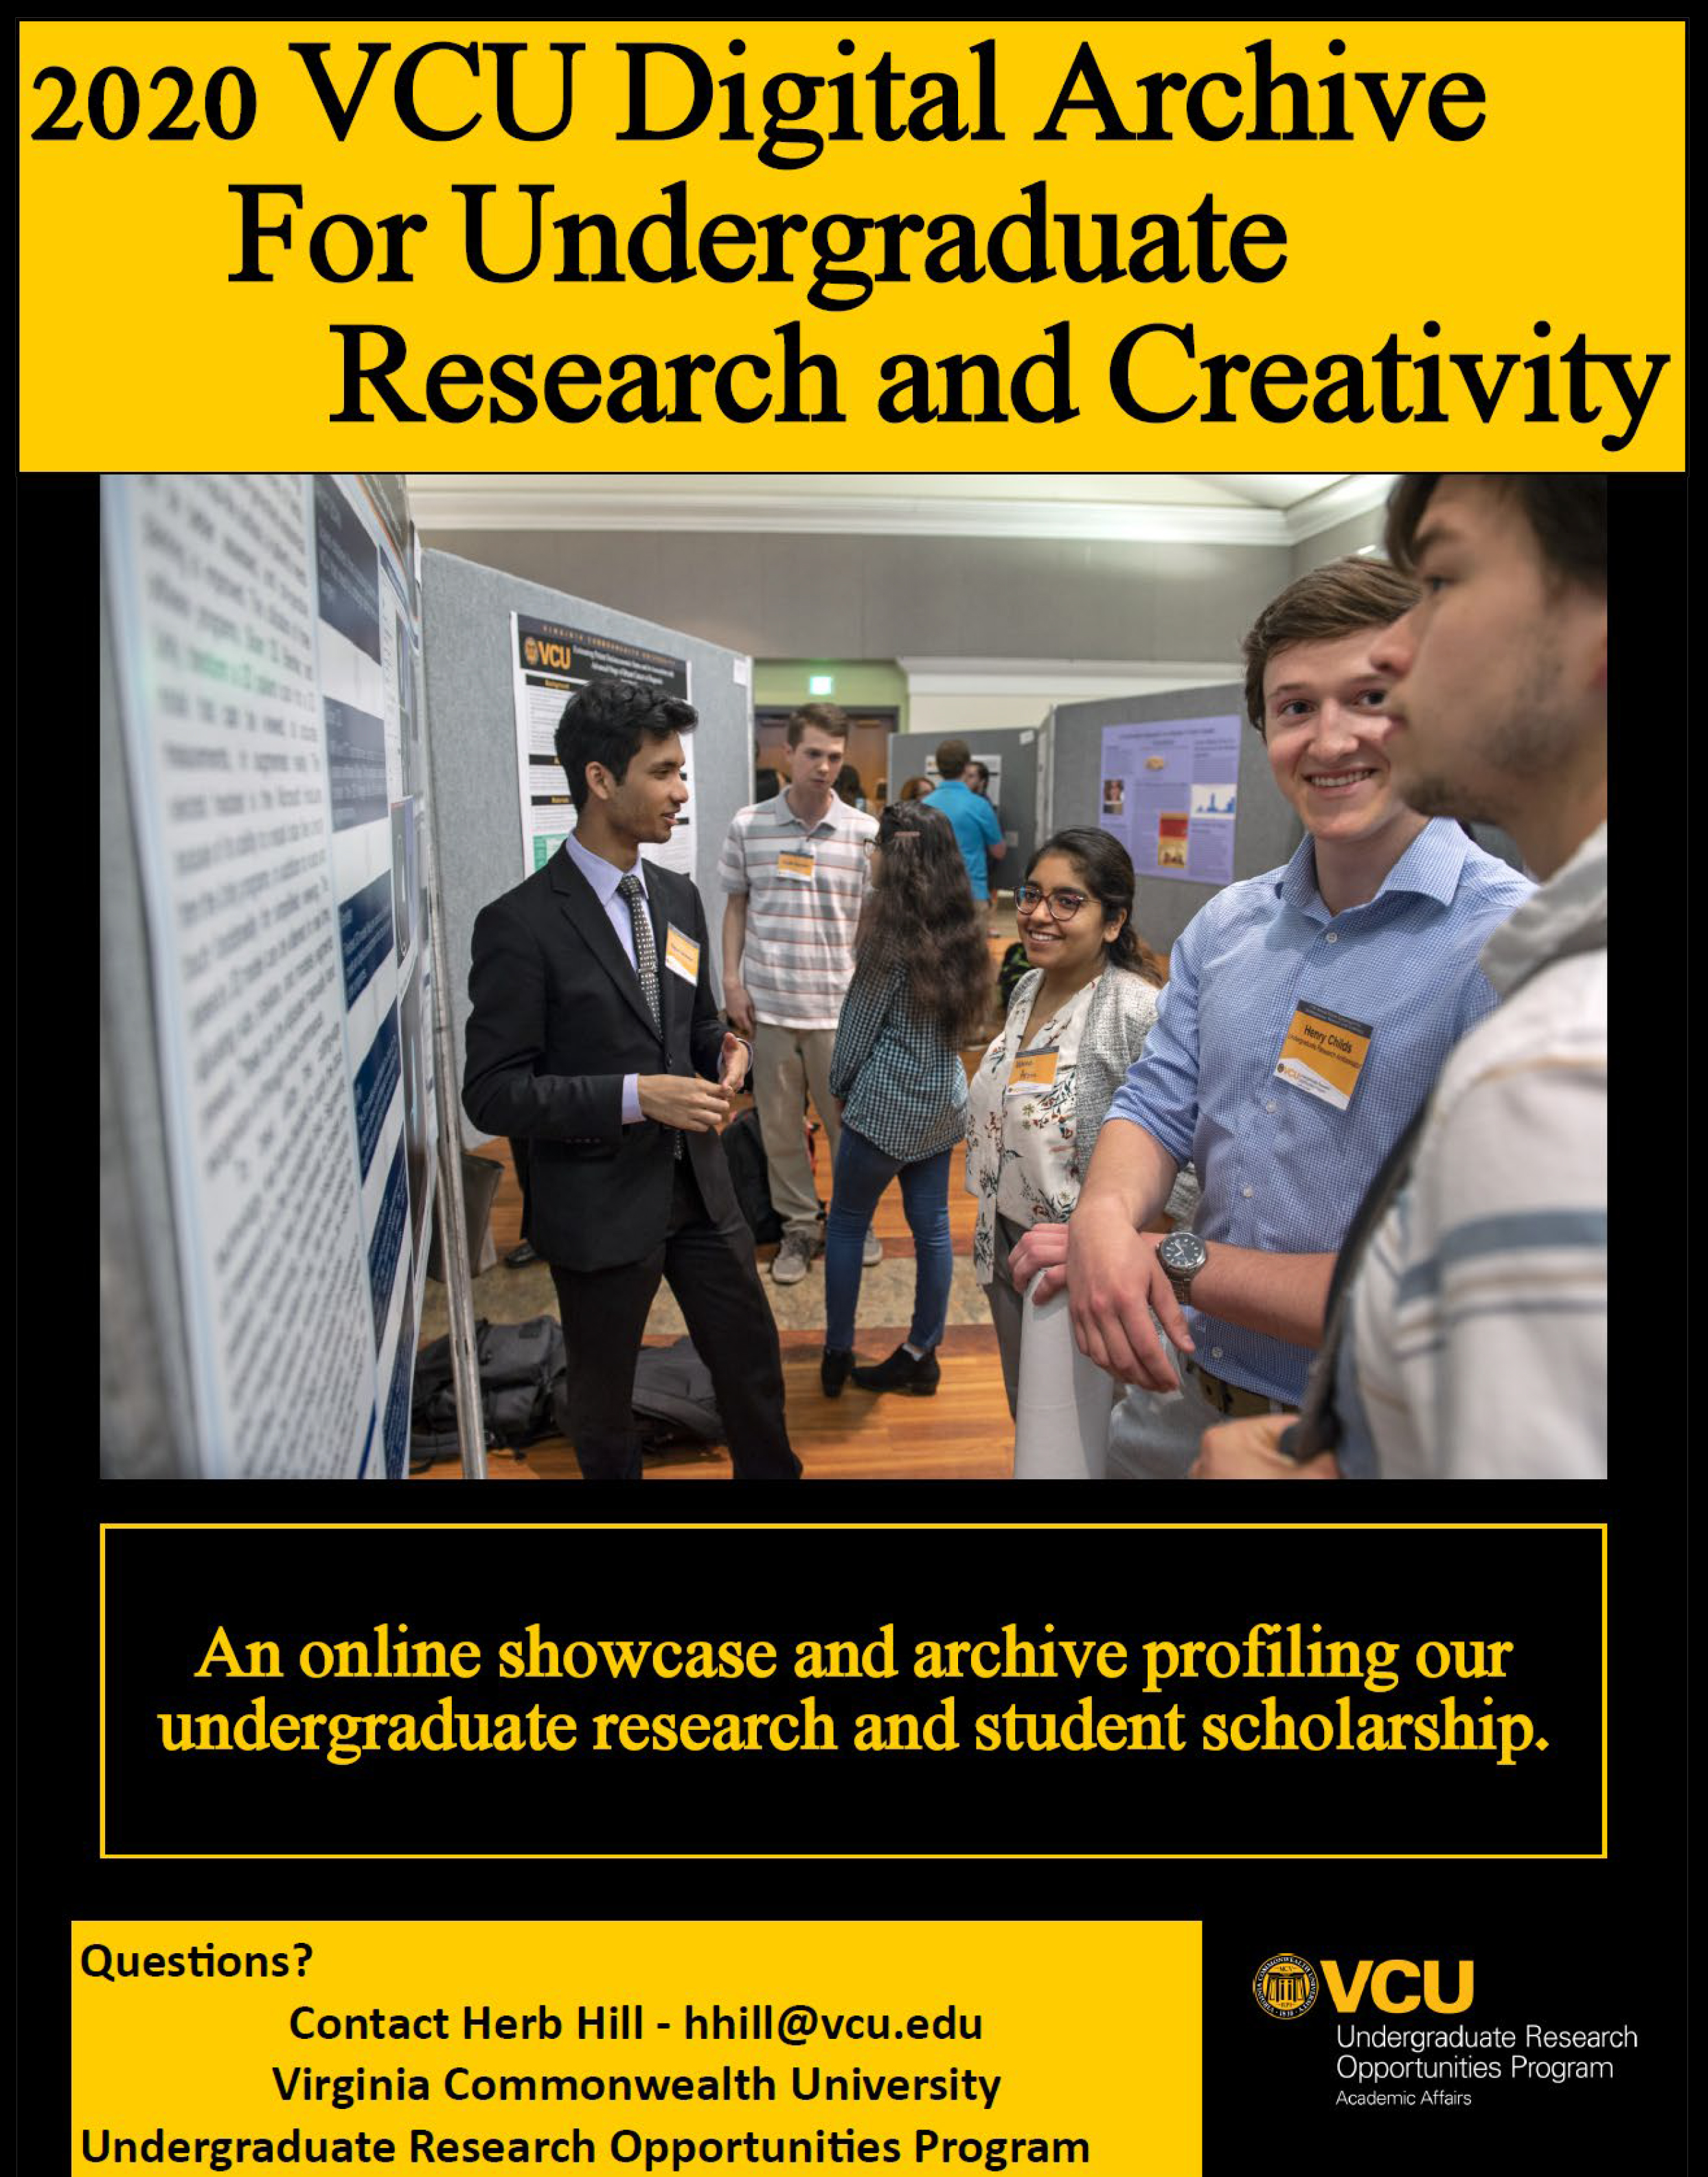 2020 VCU Digital Archive for Undergraduate Research